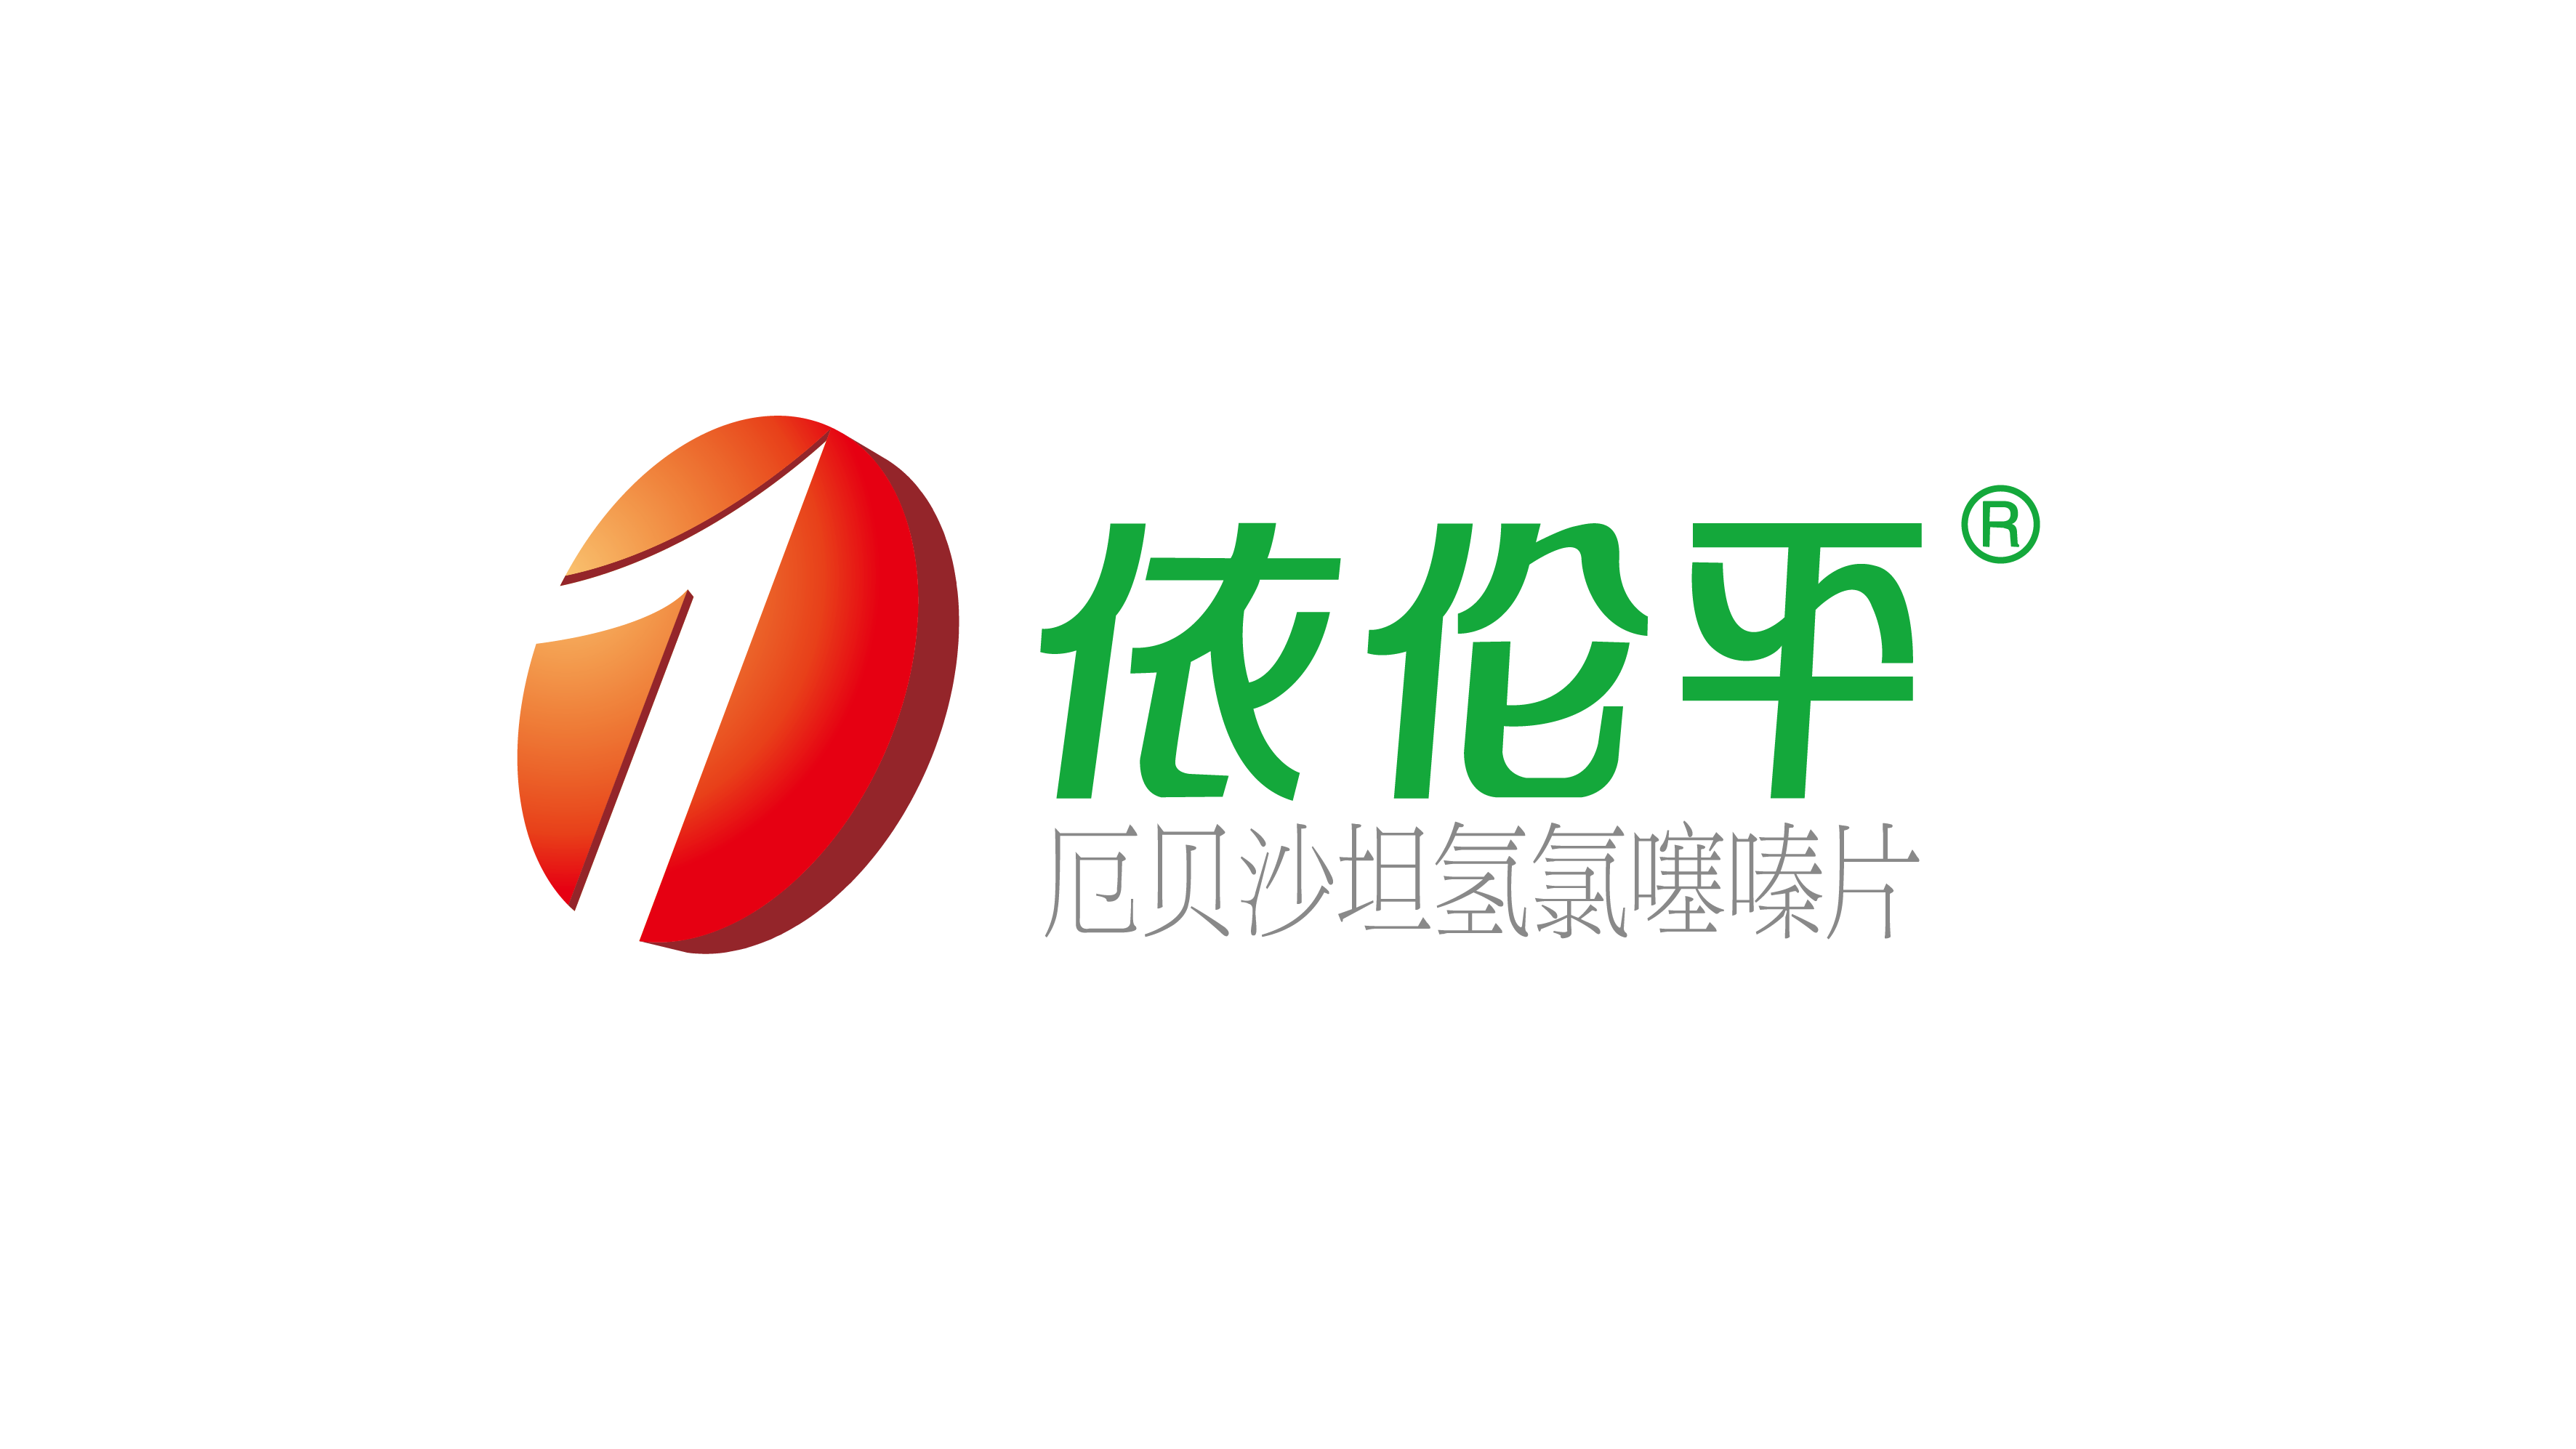 依伦平logo.ai